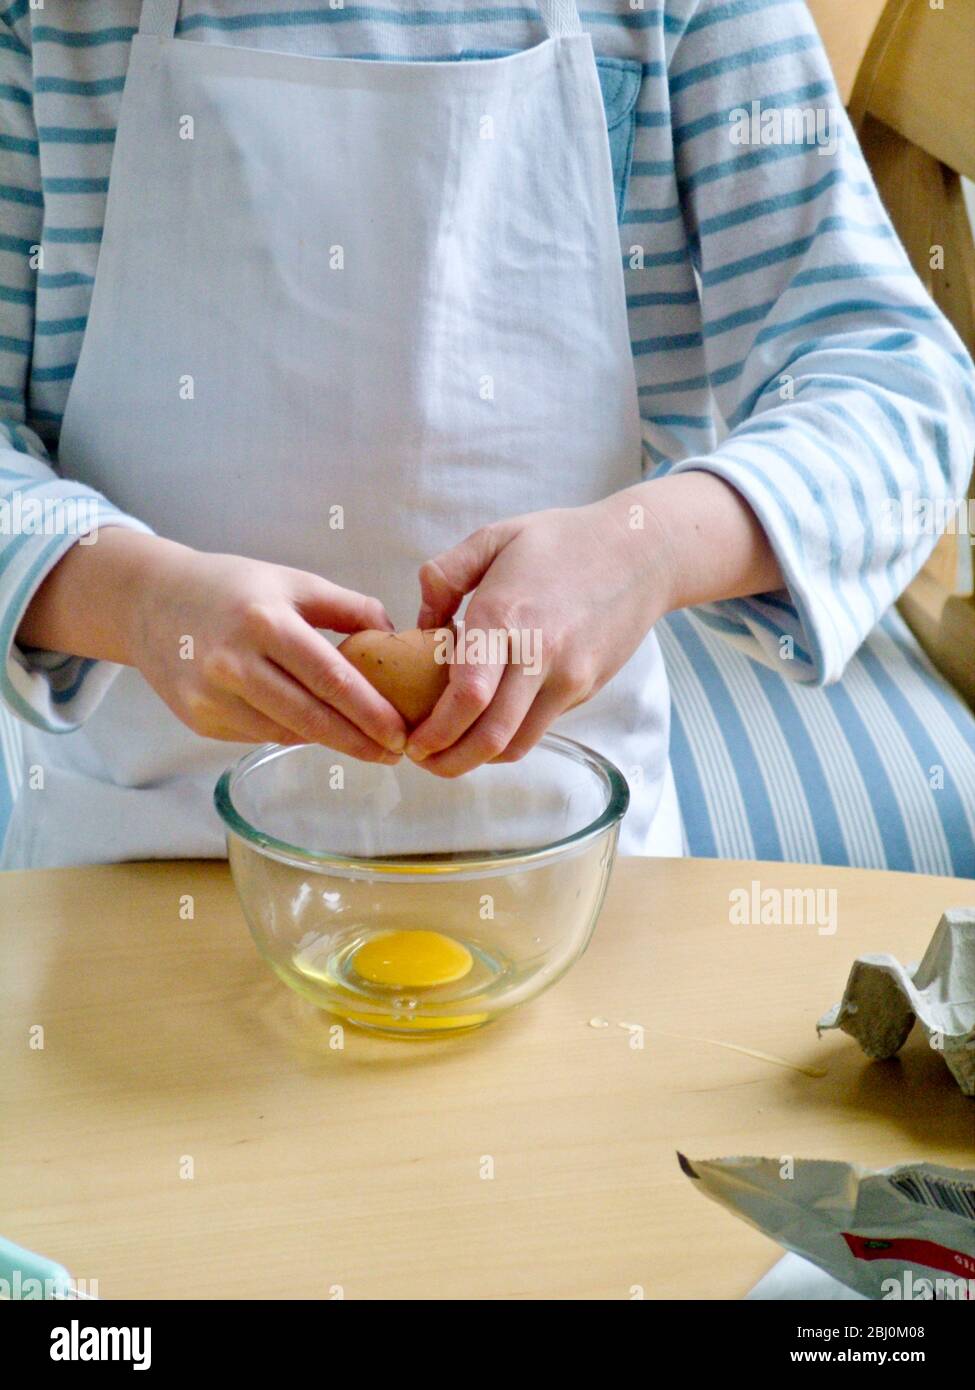 Bambino che rompe le uova in una ciotola di vetro, imparando come fare le uova strapazzate. - Foto Stock